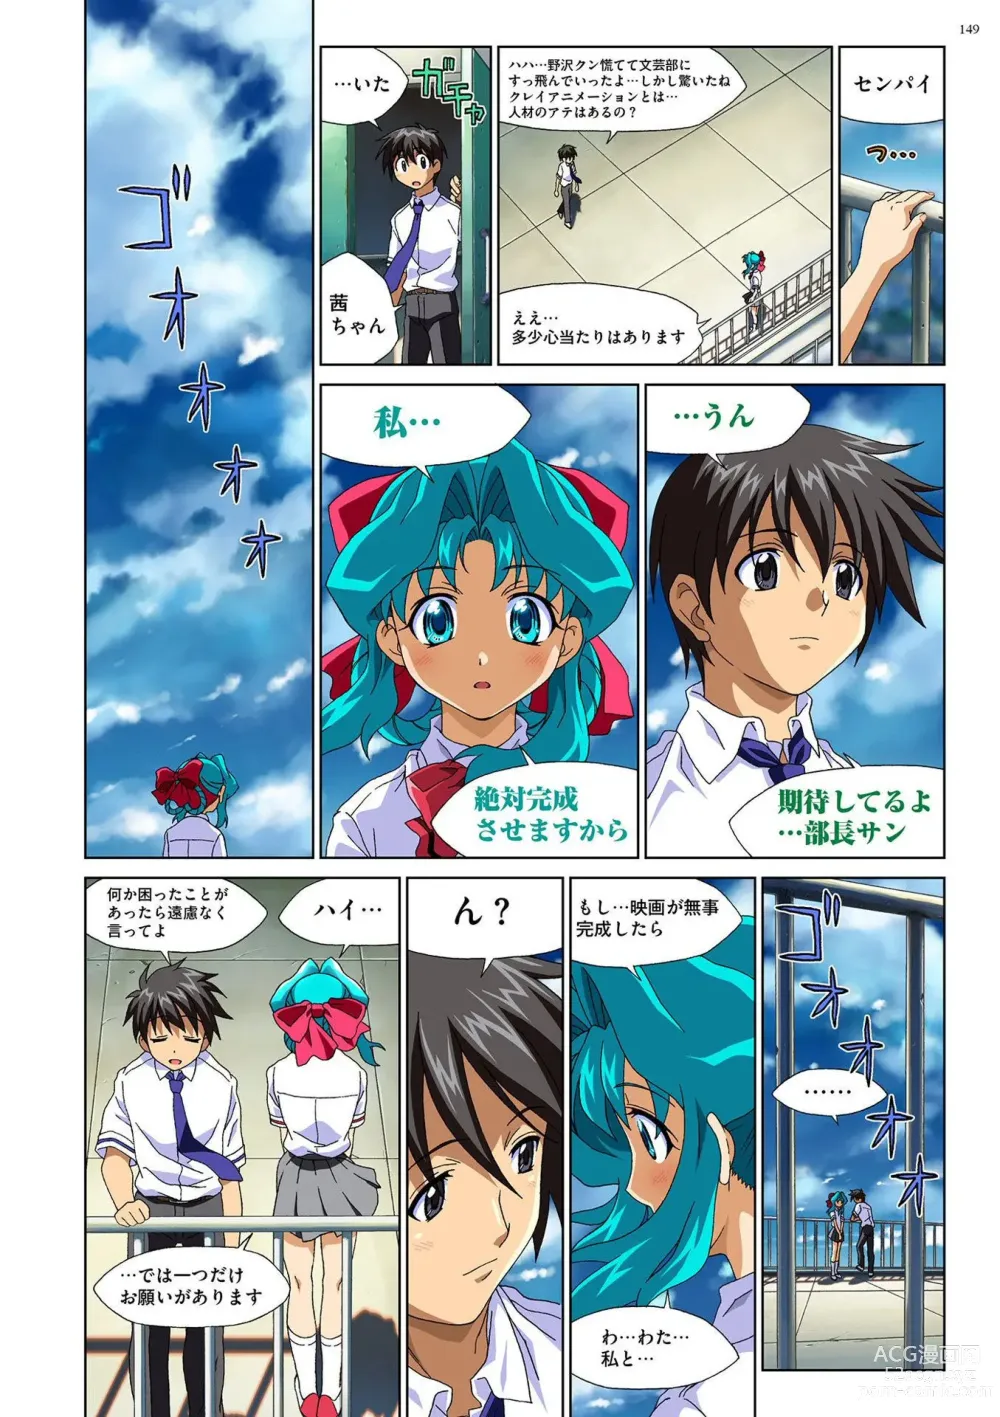 Page 148 of manga Mariko-chan ga Iku!!